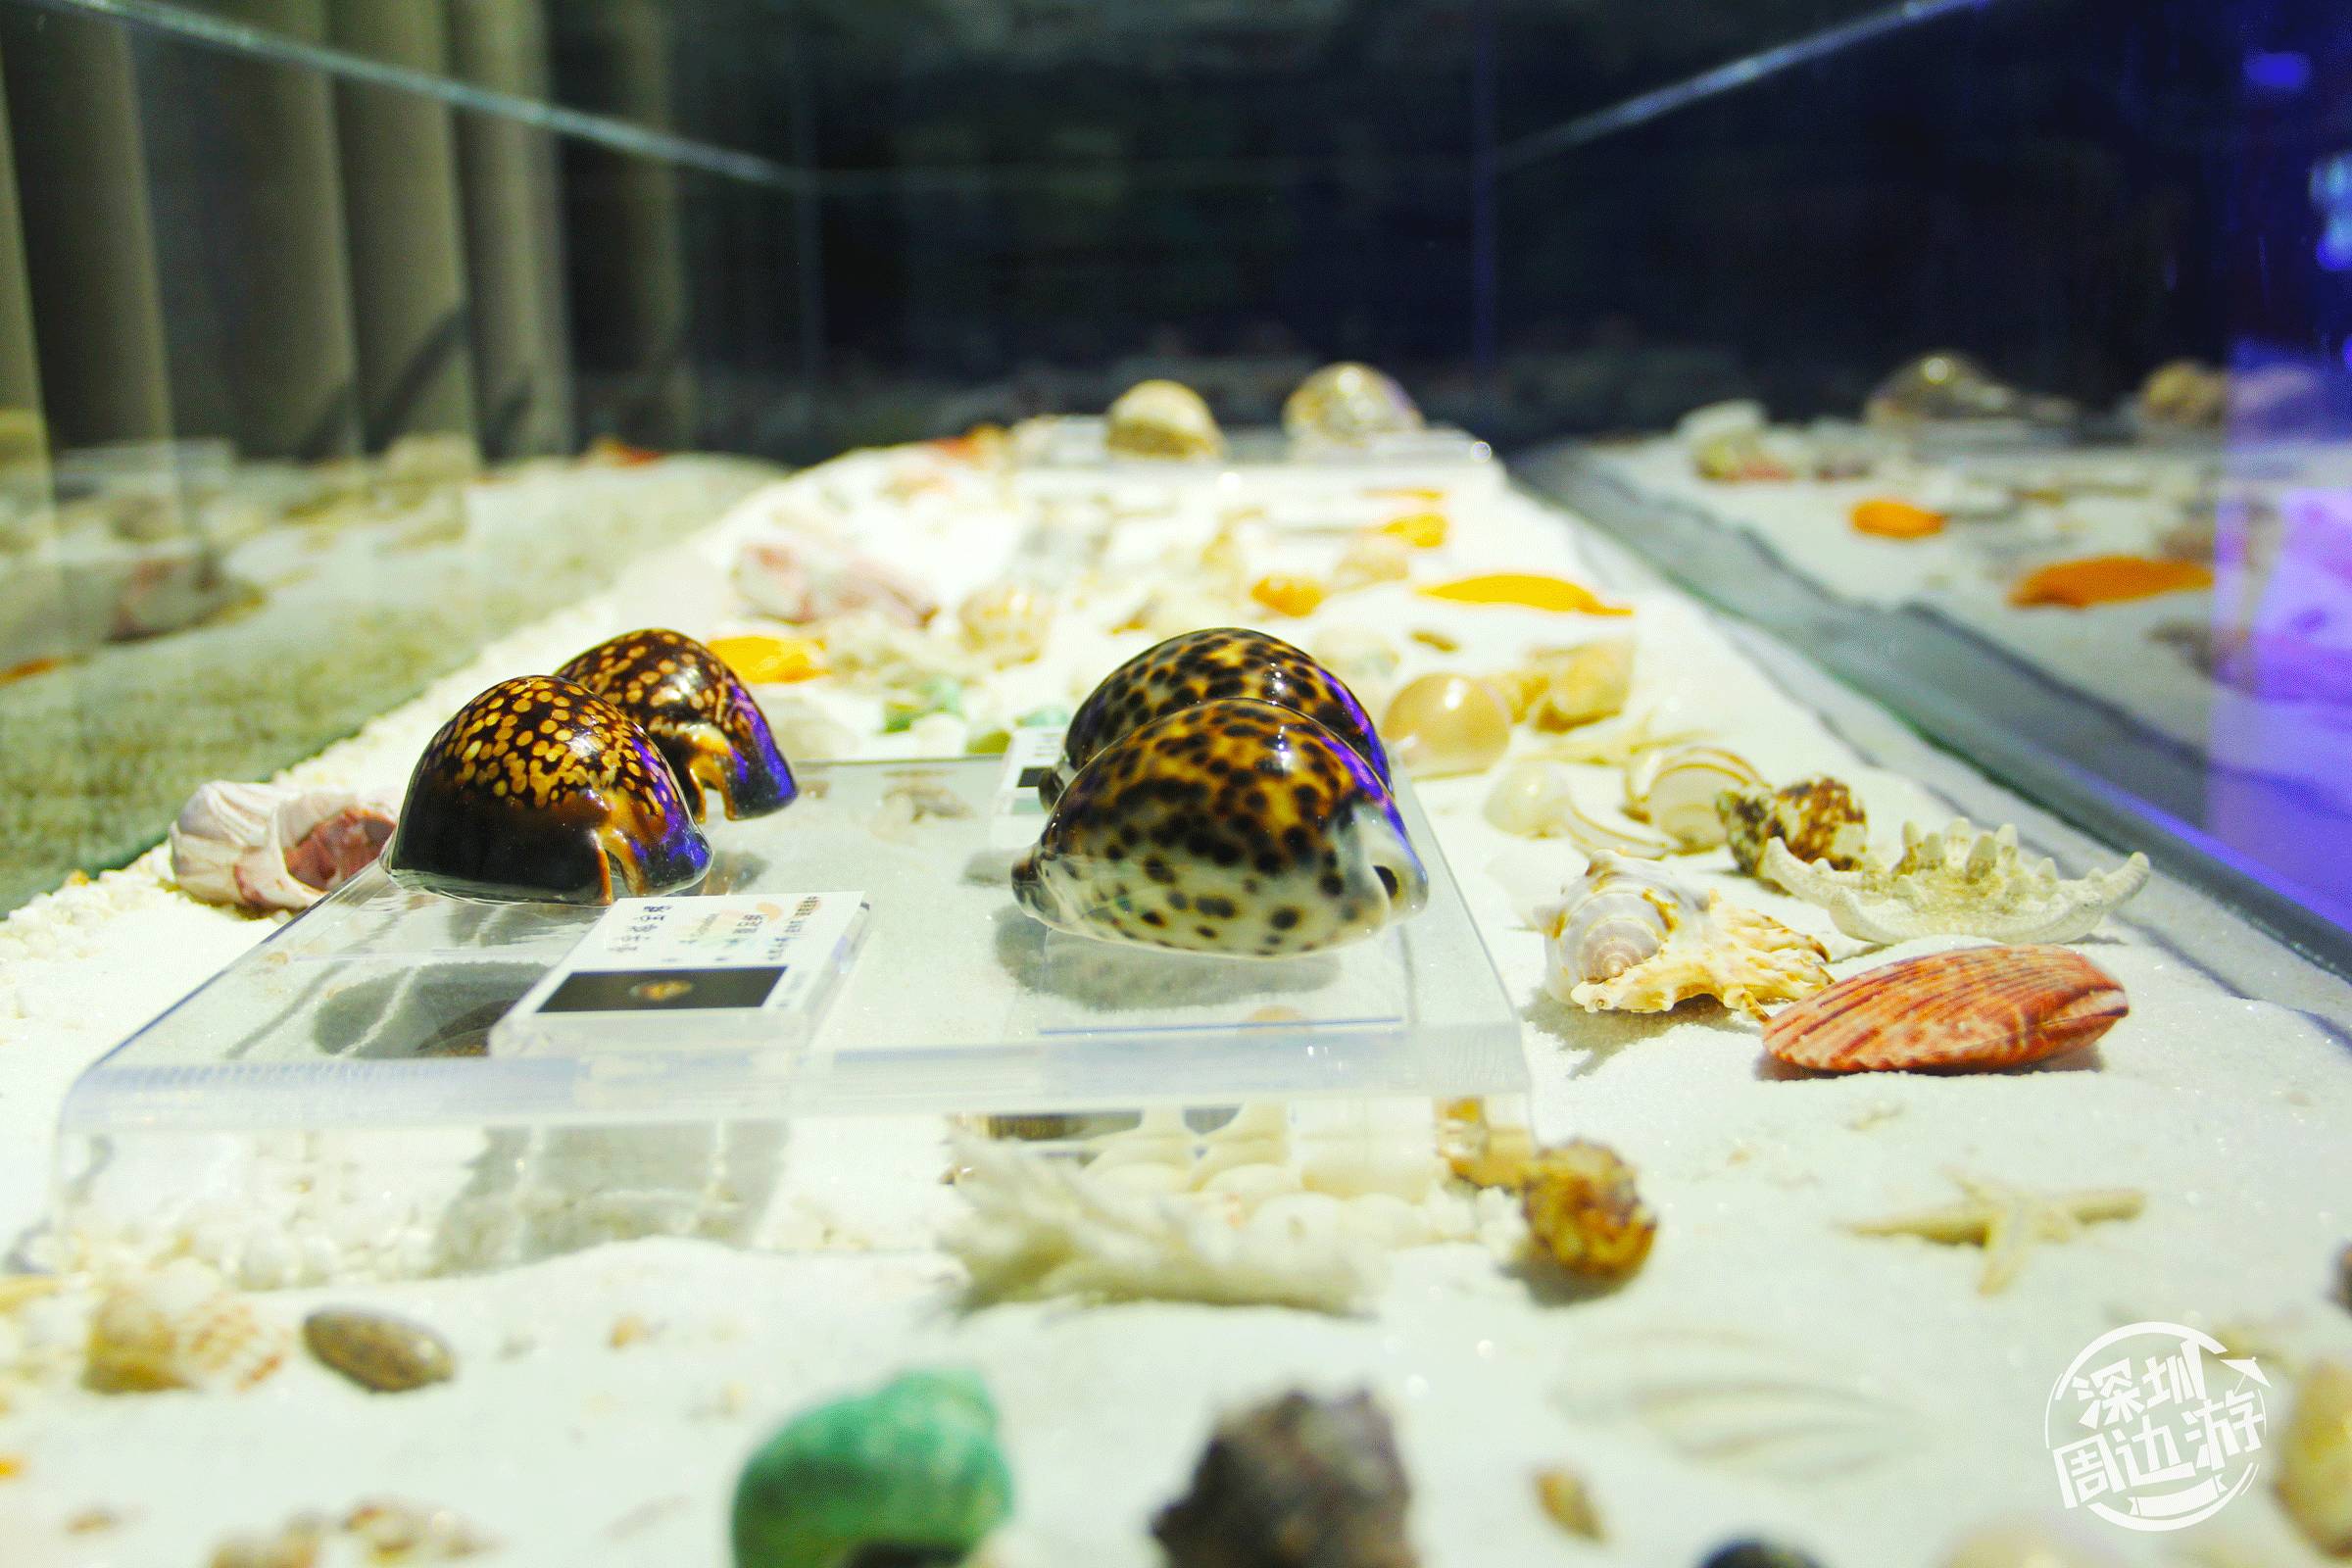 免费开放!深圳蛇口海洋博物馆终于开馆,海底世界美翻了!